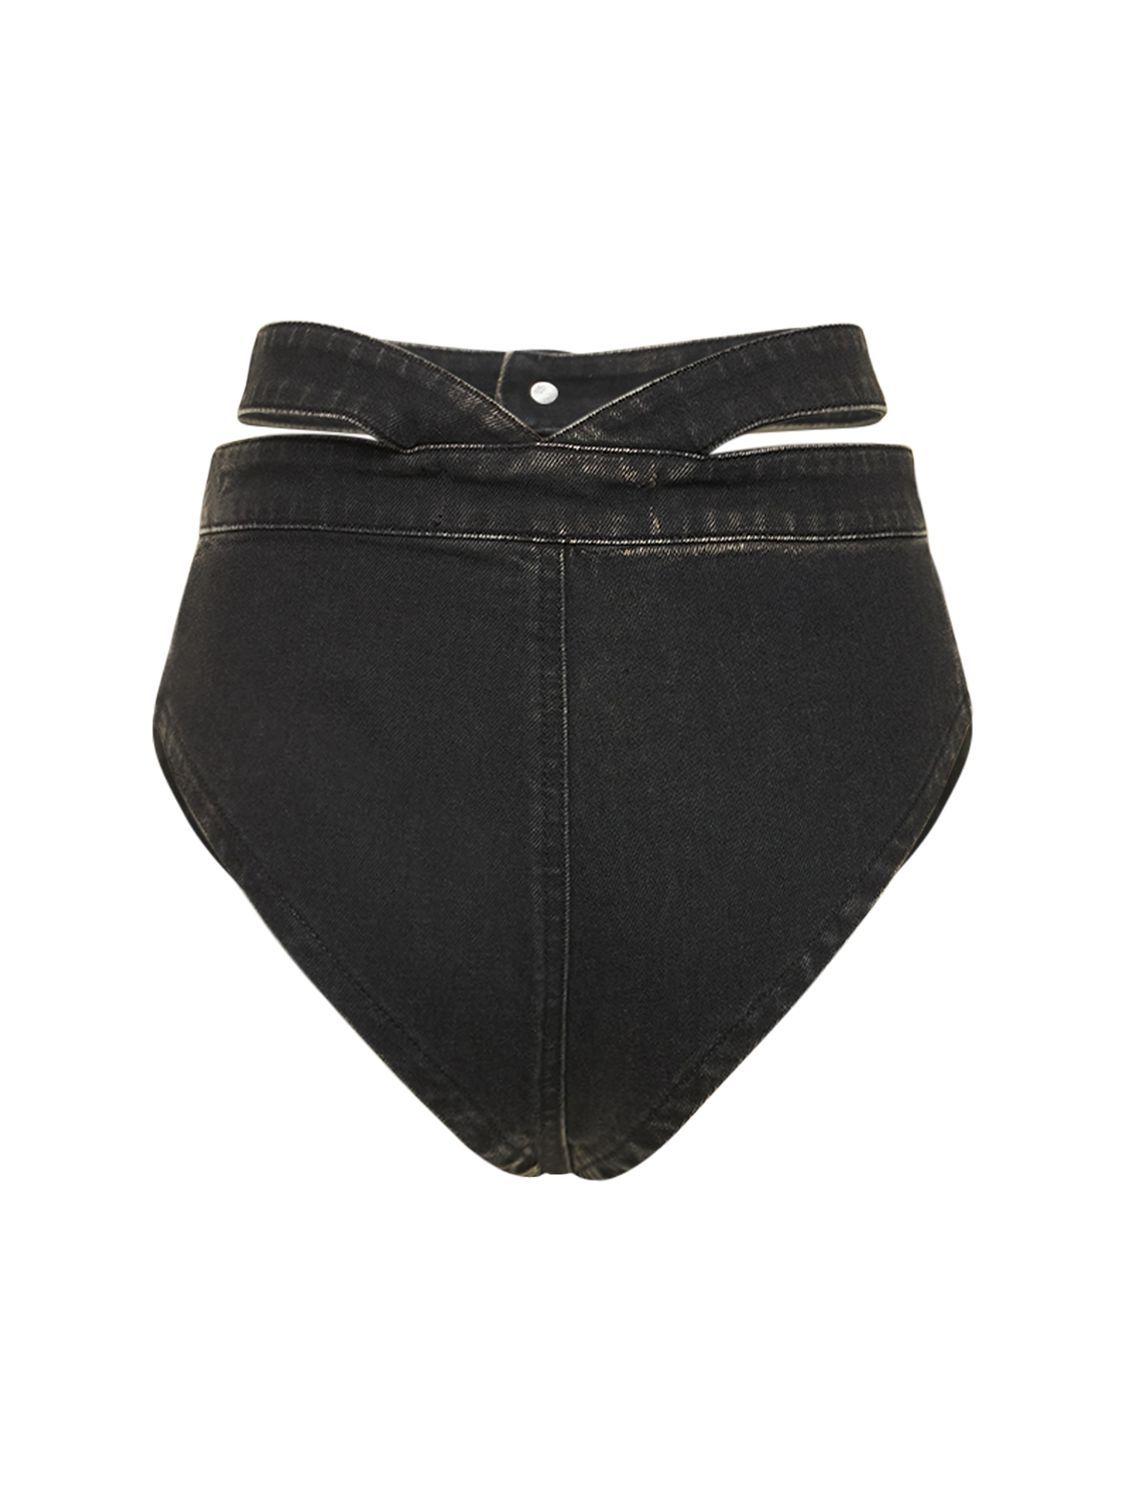 KAREN MILLEN Compact Stretch Hot Pants in Black | Endource